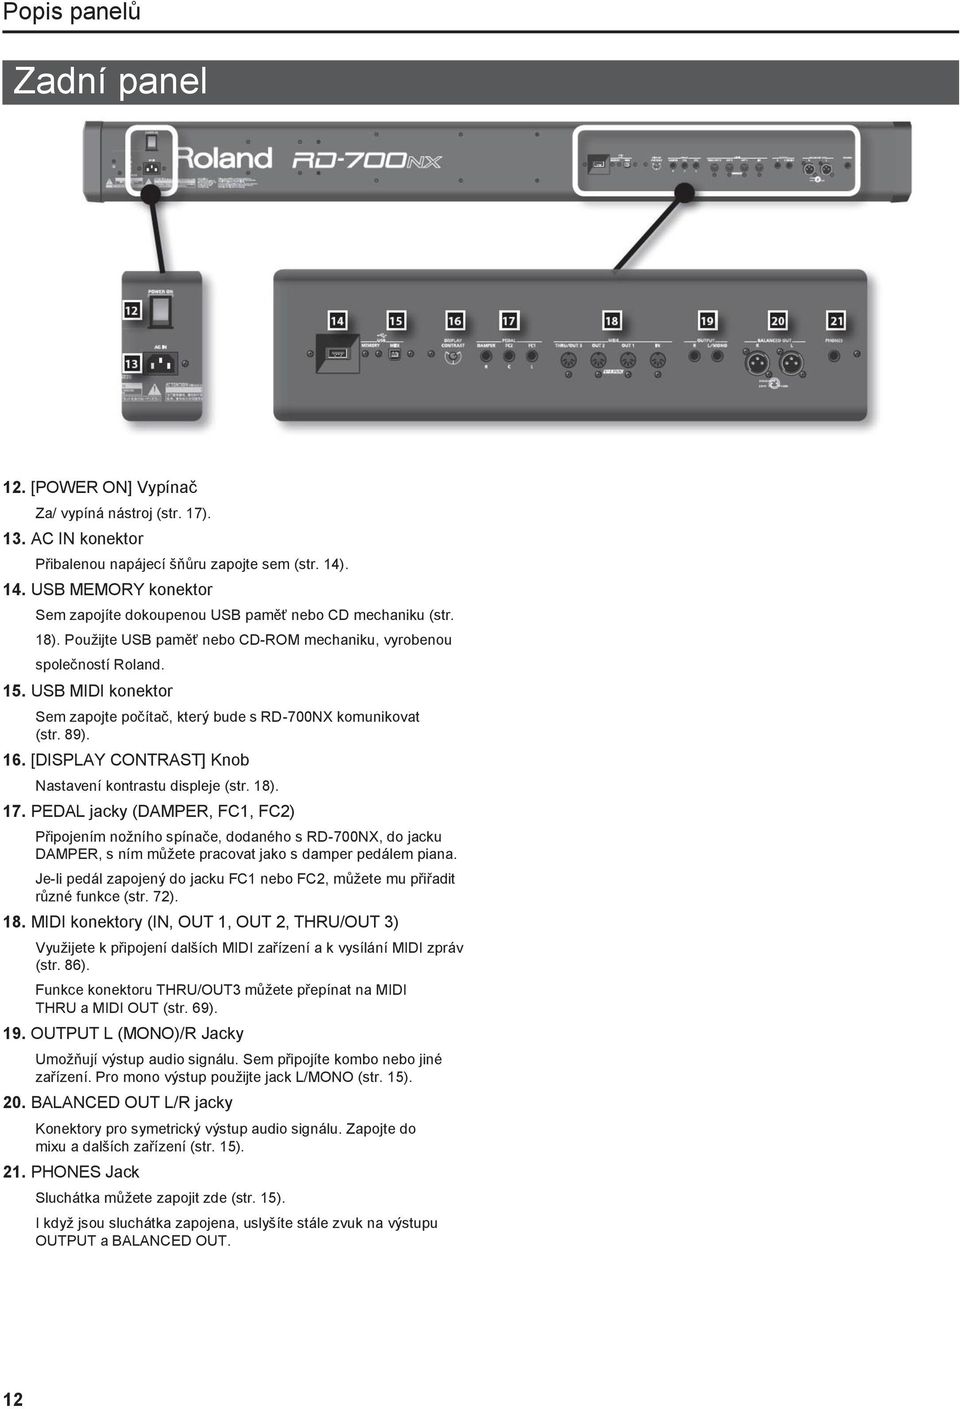 USB MIDI konektor Sem zapojte počítač, který bude s RD-700NX komunikovat (str. 89). 16. [DISPLAY CONTRAST] Knob Nastavení kontrastu displeje (str. 18). 17.